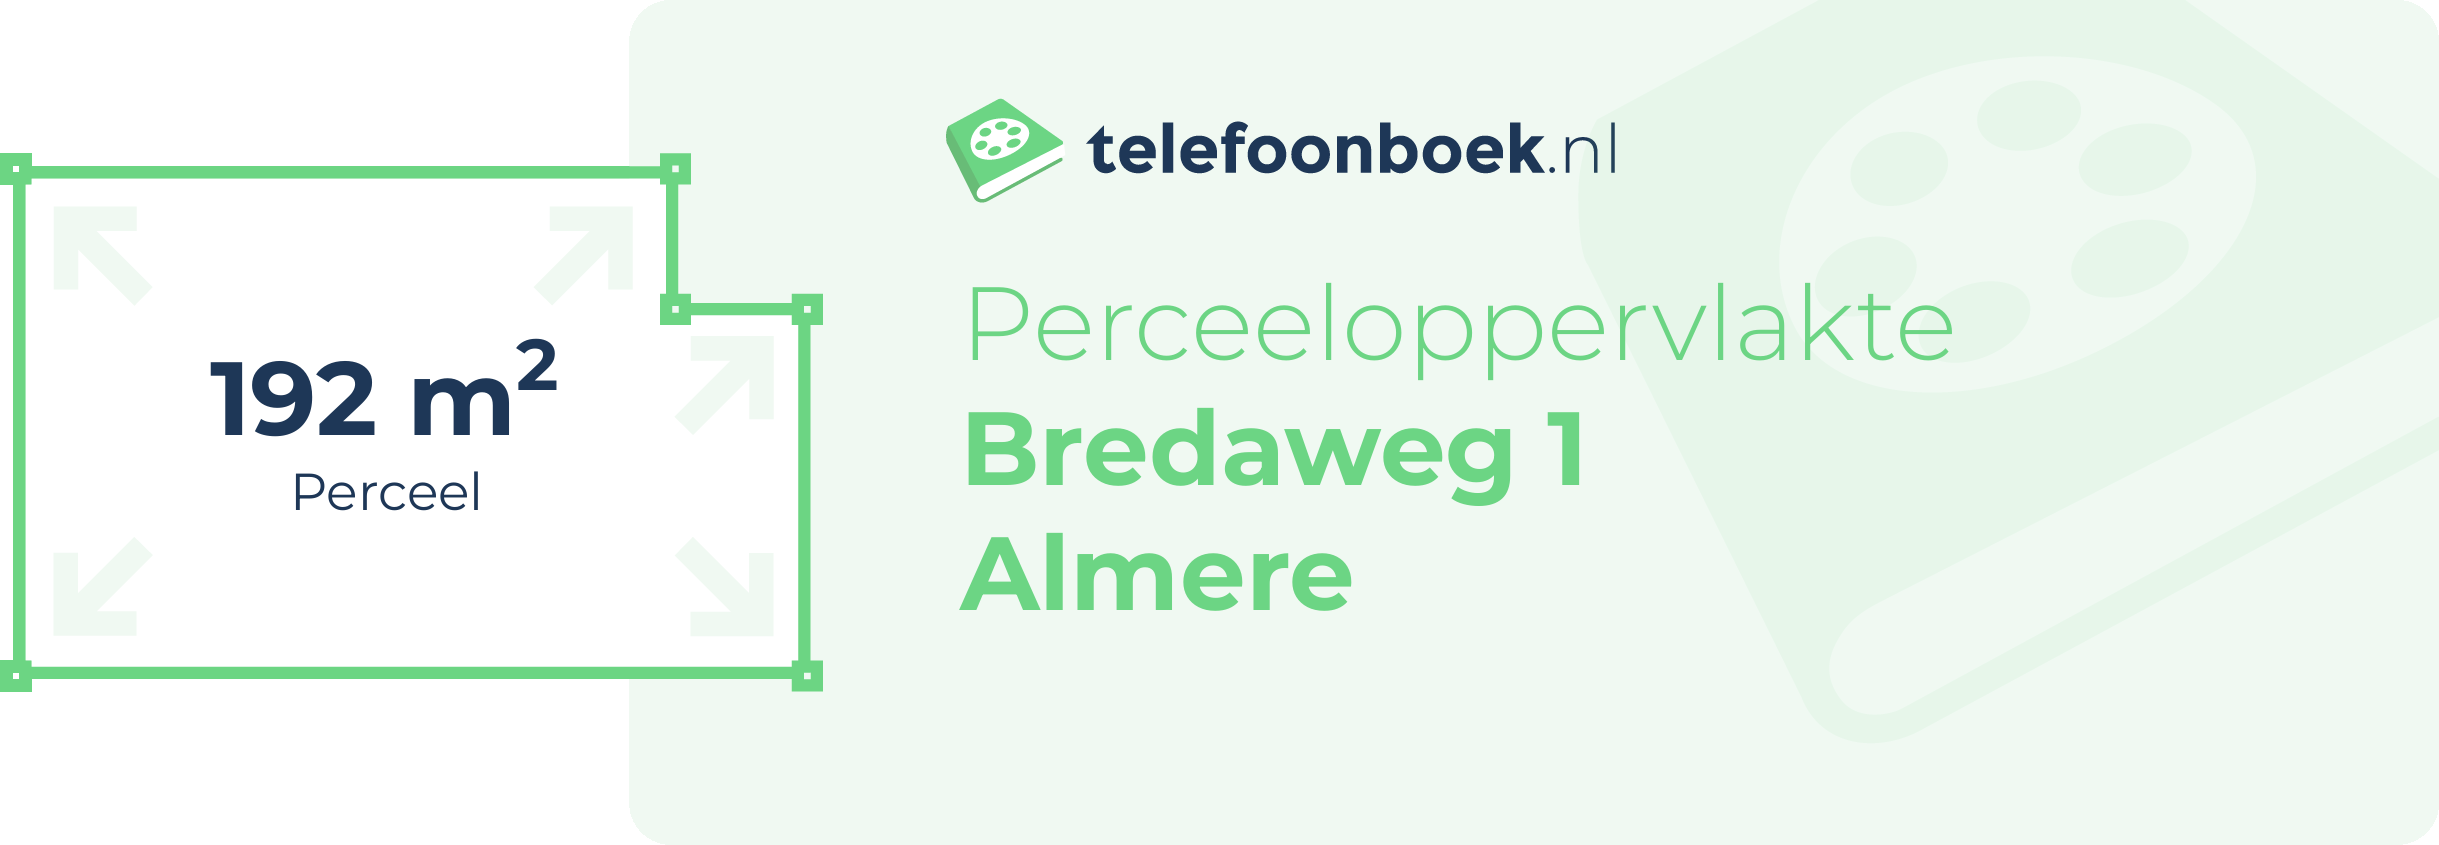 Perceeloppervlakte Bredaweg 1 Almere